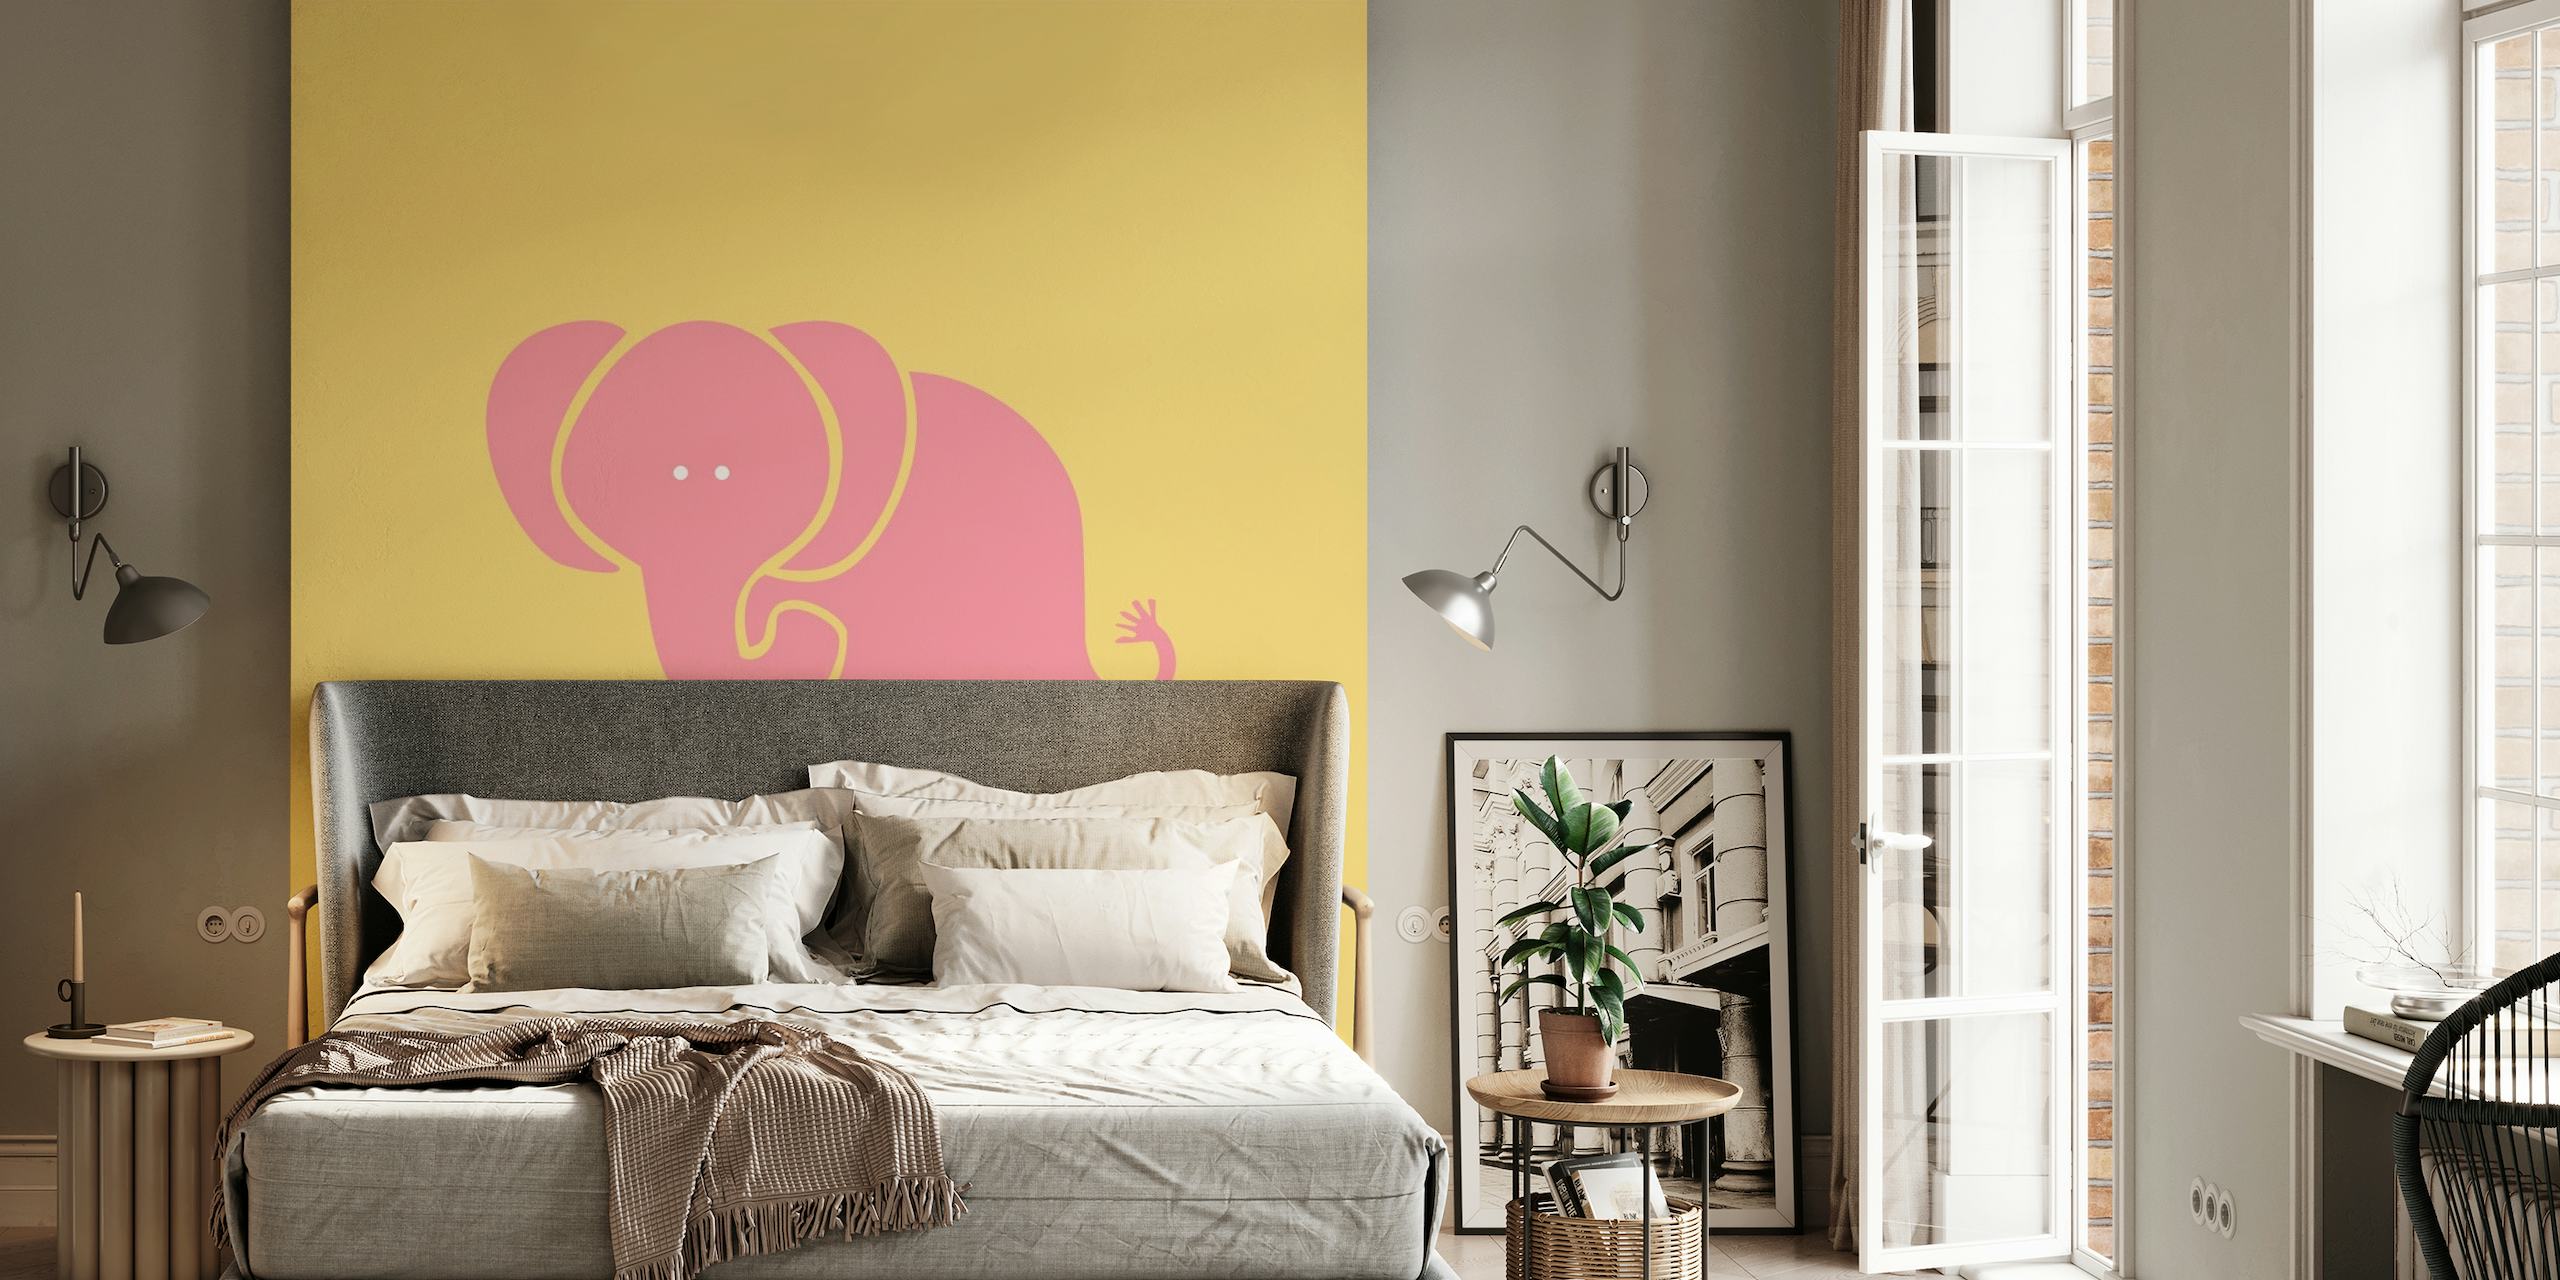 Elefante amarelo açafrão estilizado em um fotomural vinílico de parede rosa